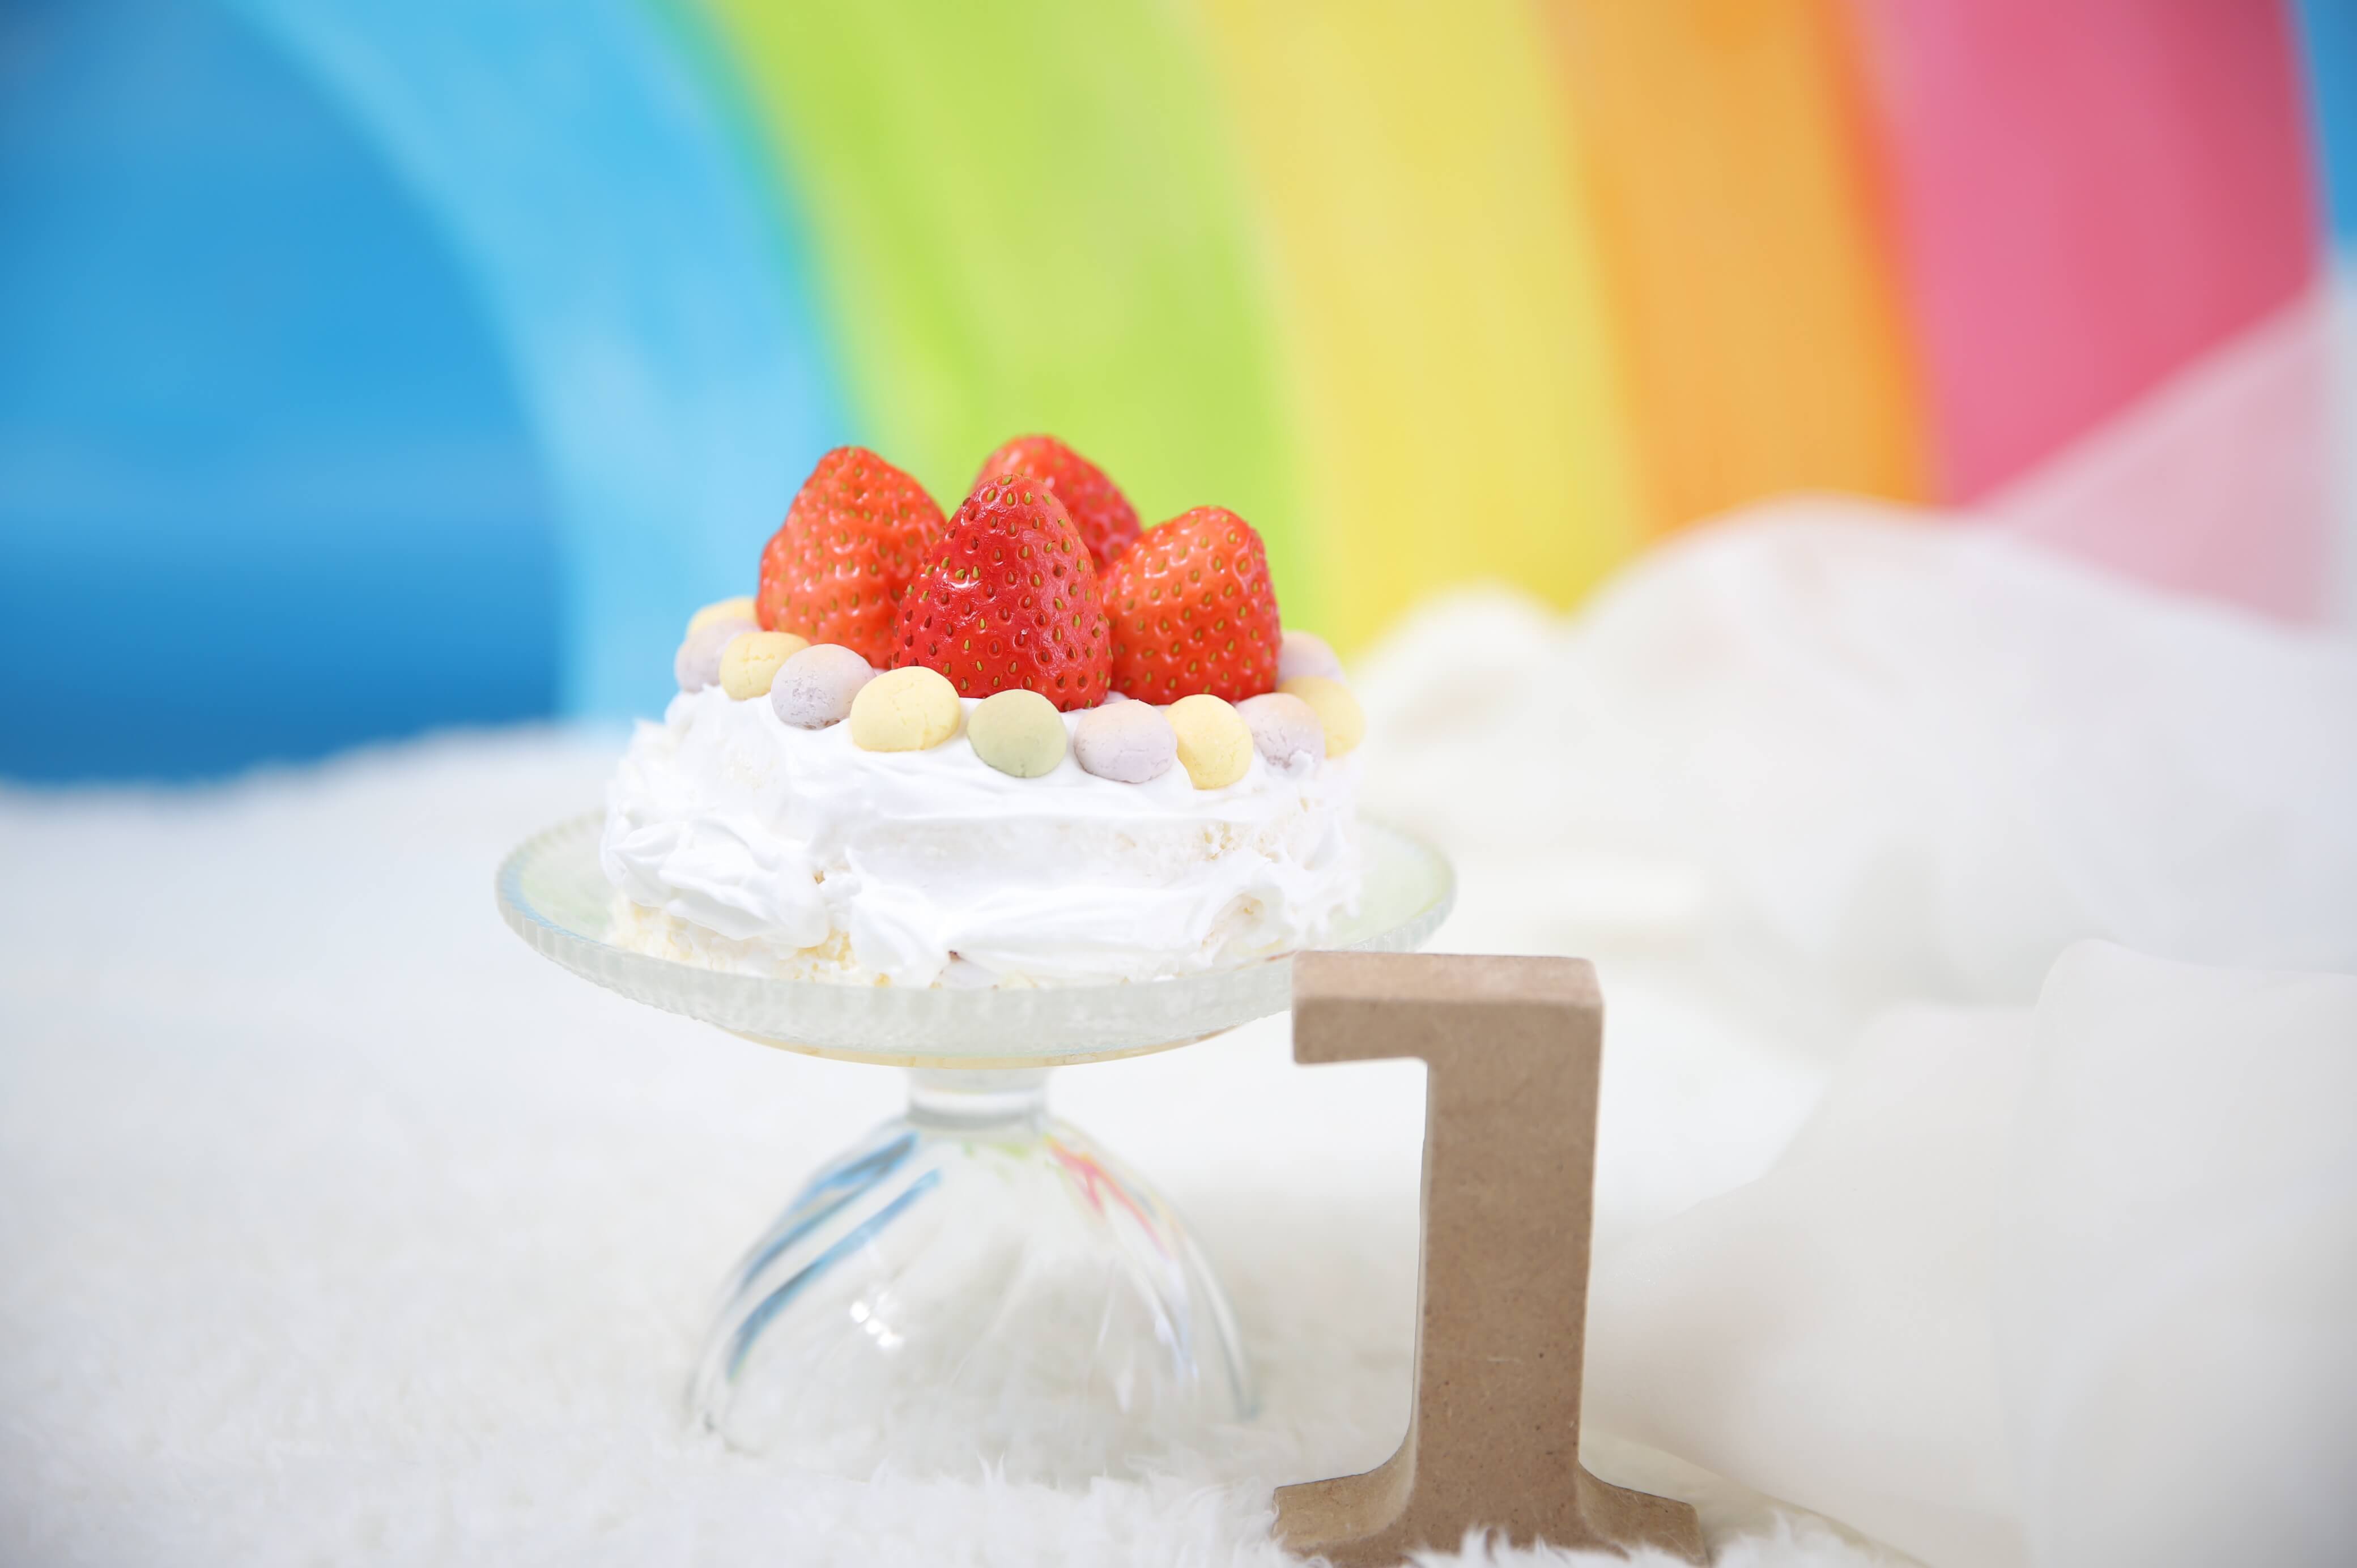 【HAPPY BIRTHDAY】“スマッシュケーキ”で1歳お誕生日のお祝いを☆Palette plus札幌西店でも撮影できるスマッシュケーキ撮影とは？